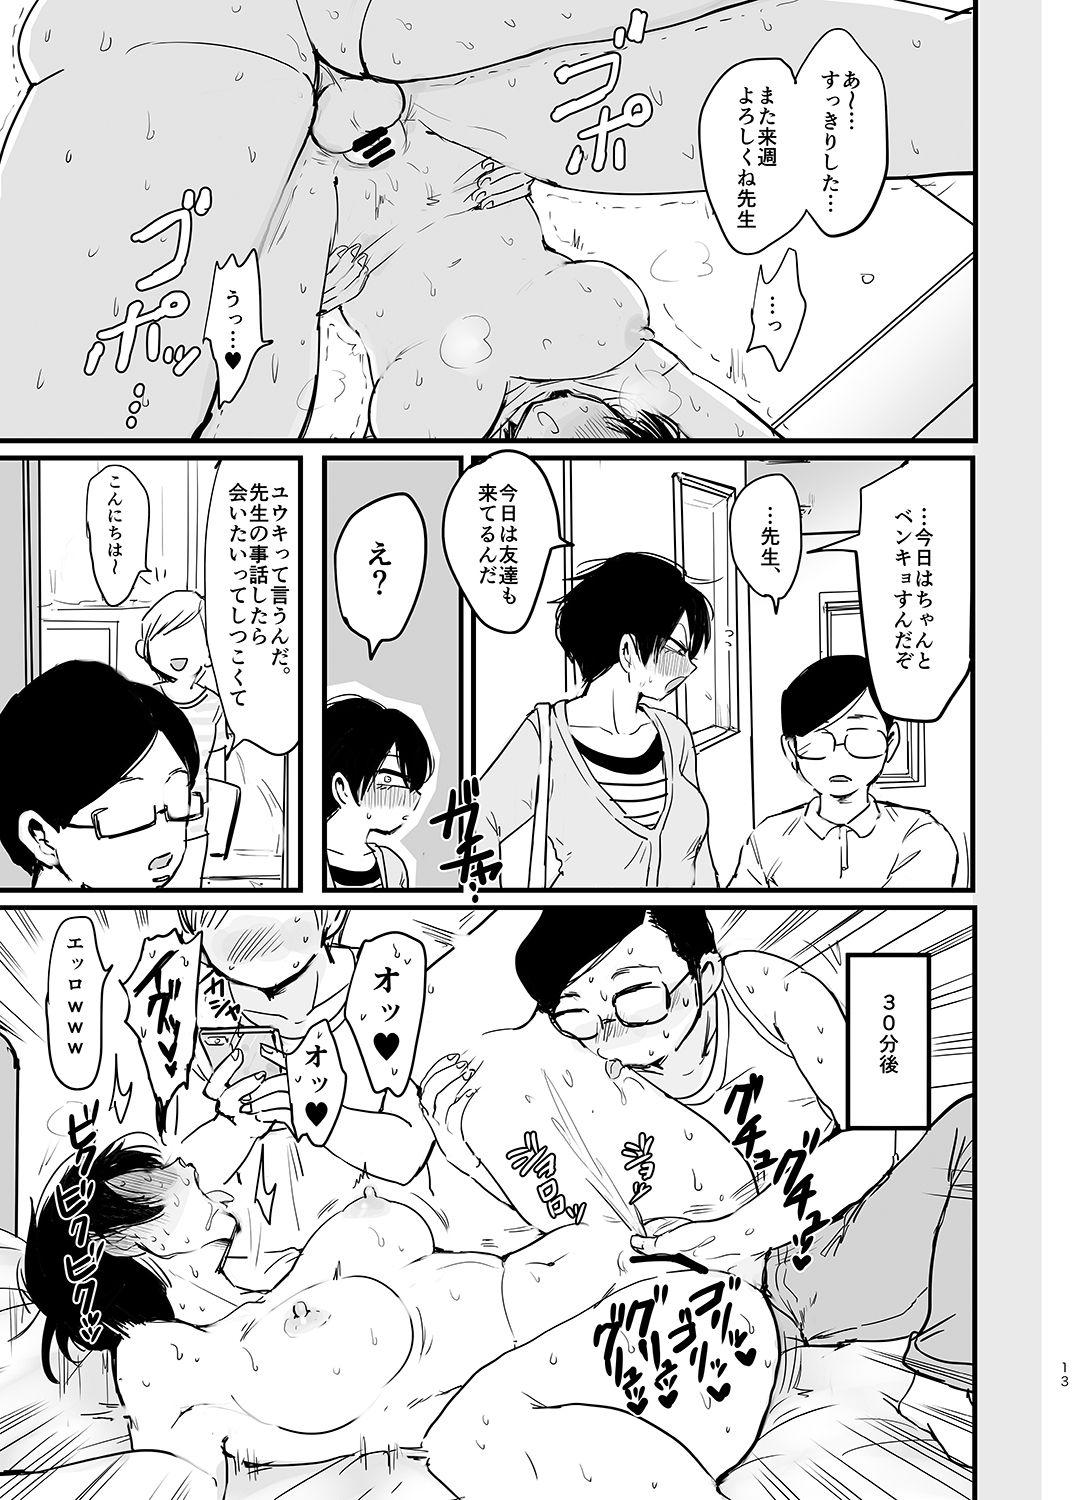 Moneytalks Sensei no, atsukute, ichiban oku - Yowamushi pedal Cheerleader - Page 14